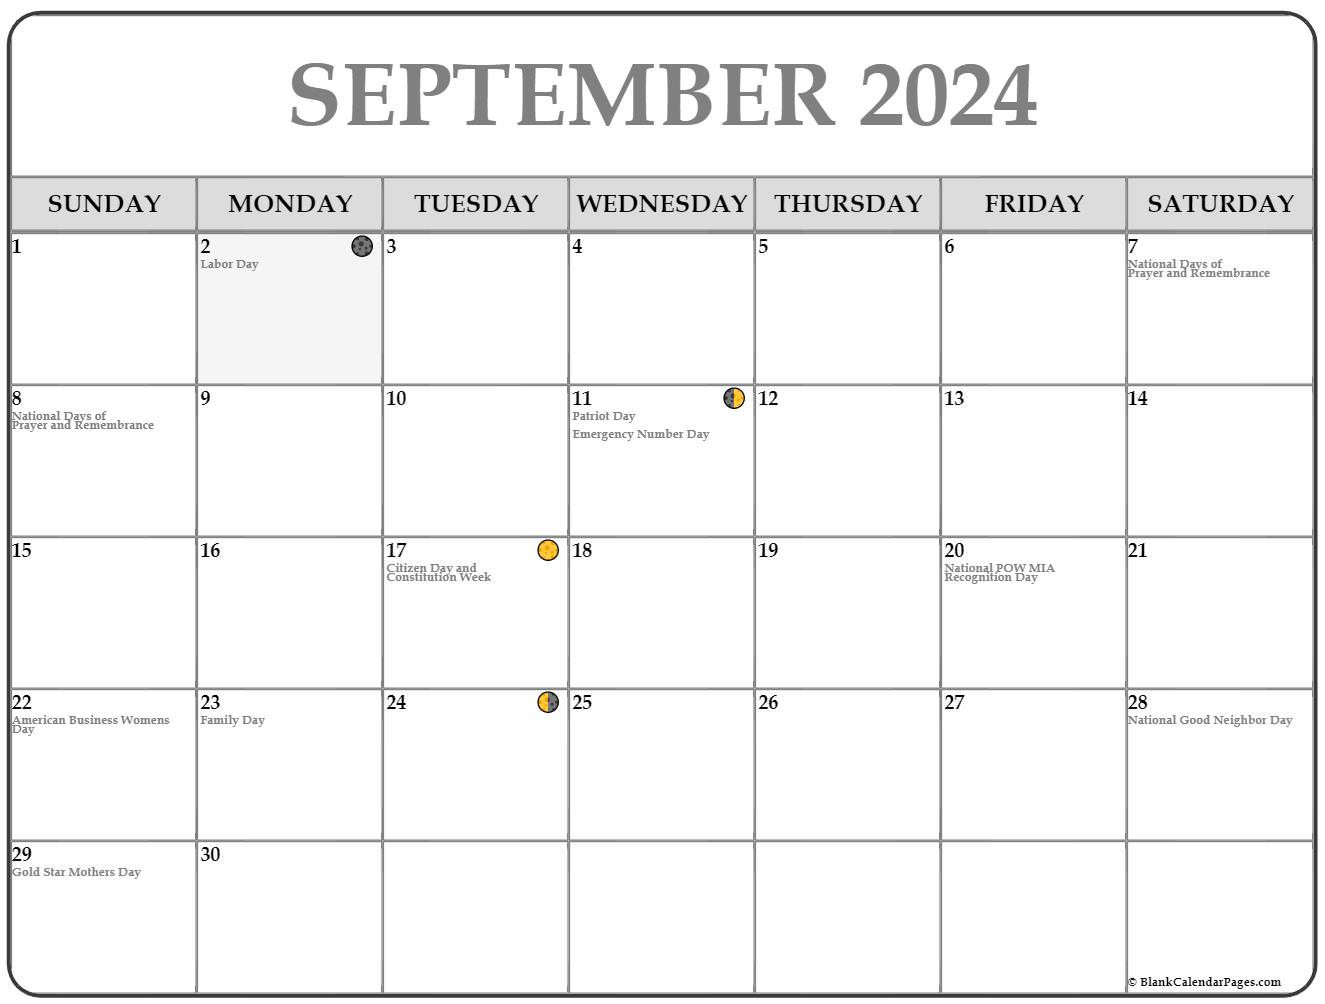 September 2024 Full Moon Calendar - Cody Tallie